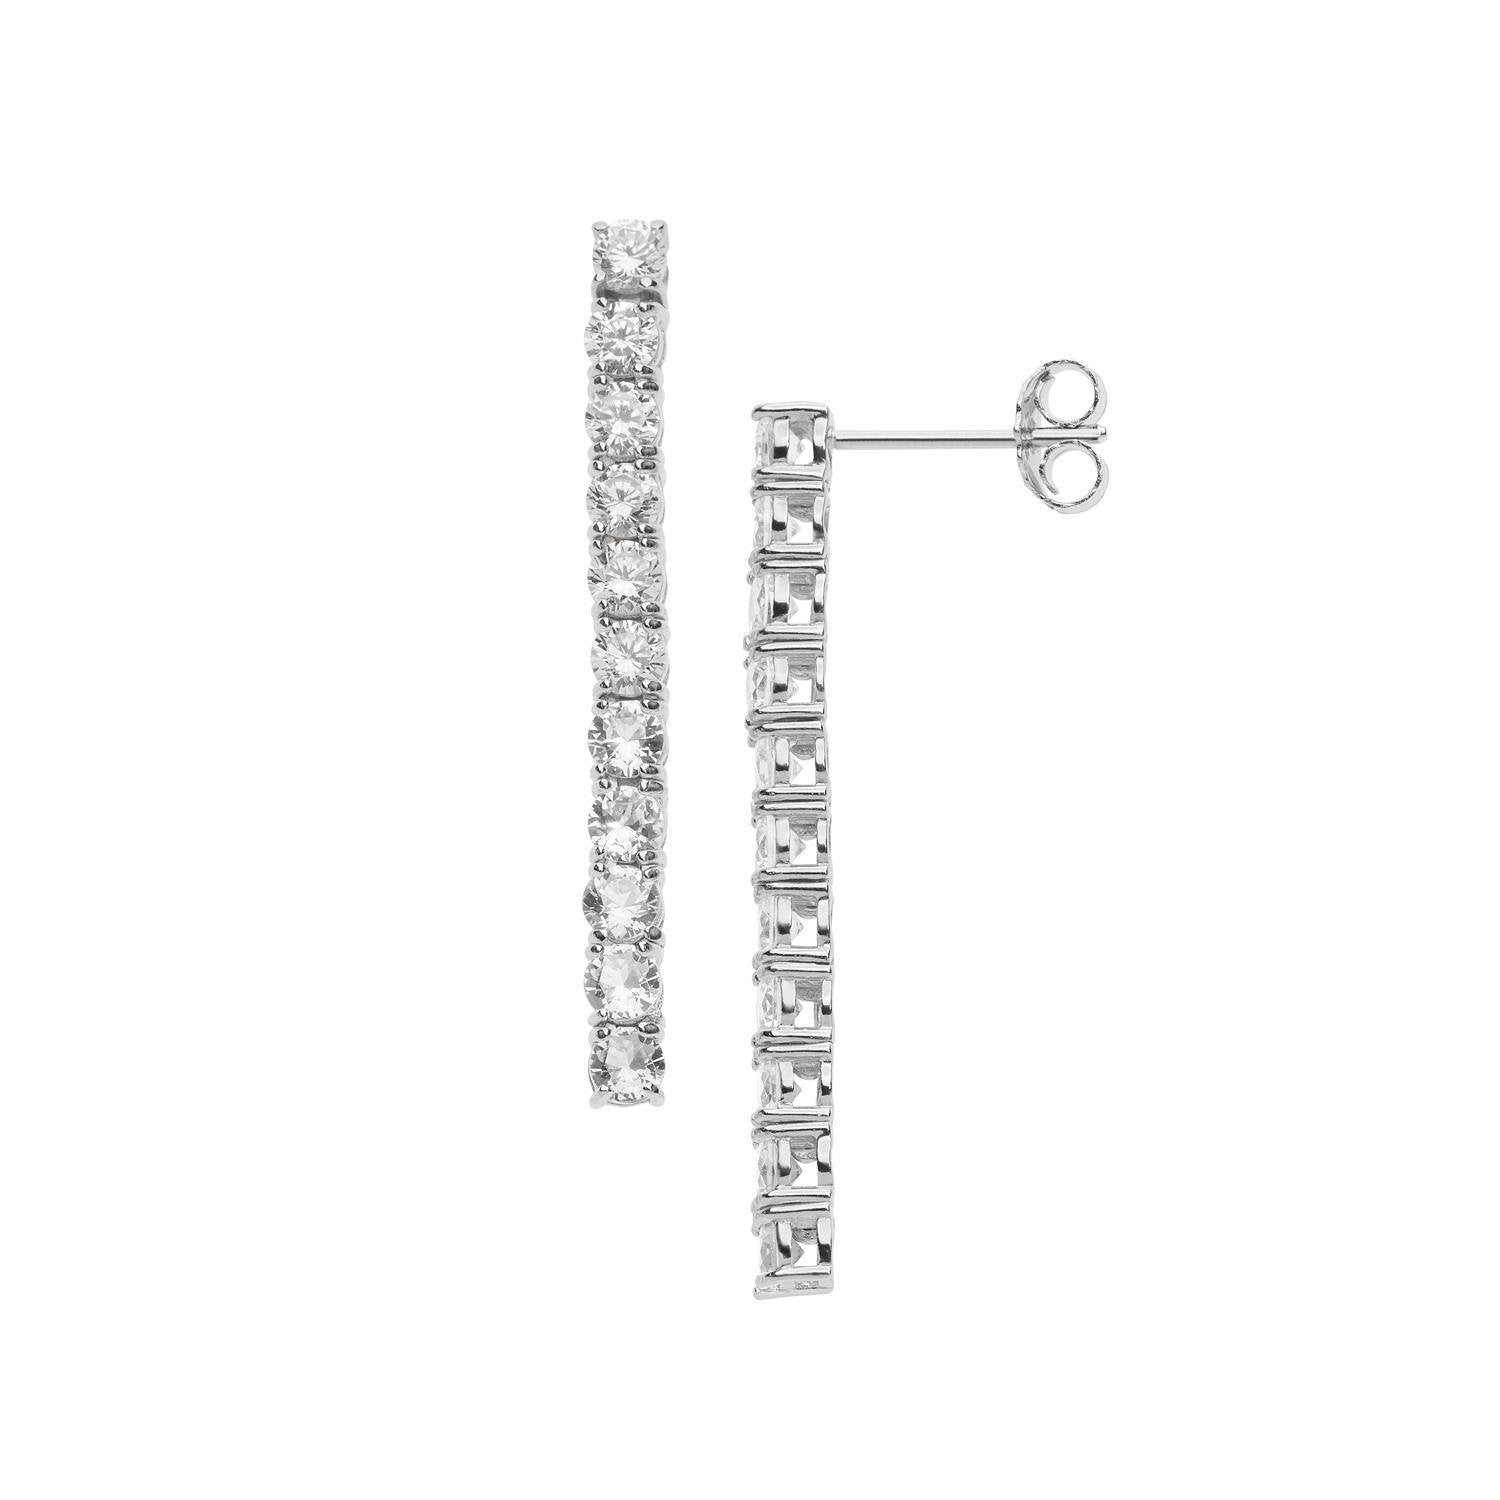 Orecchini pendenti COMETE GIOIELLI argento Wedding Romantica cristalli bianchi ORA 139 - bonini-gioielli